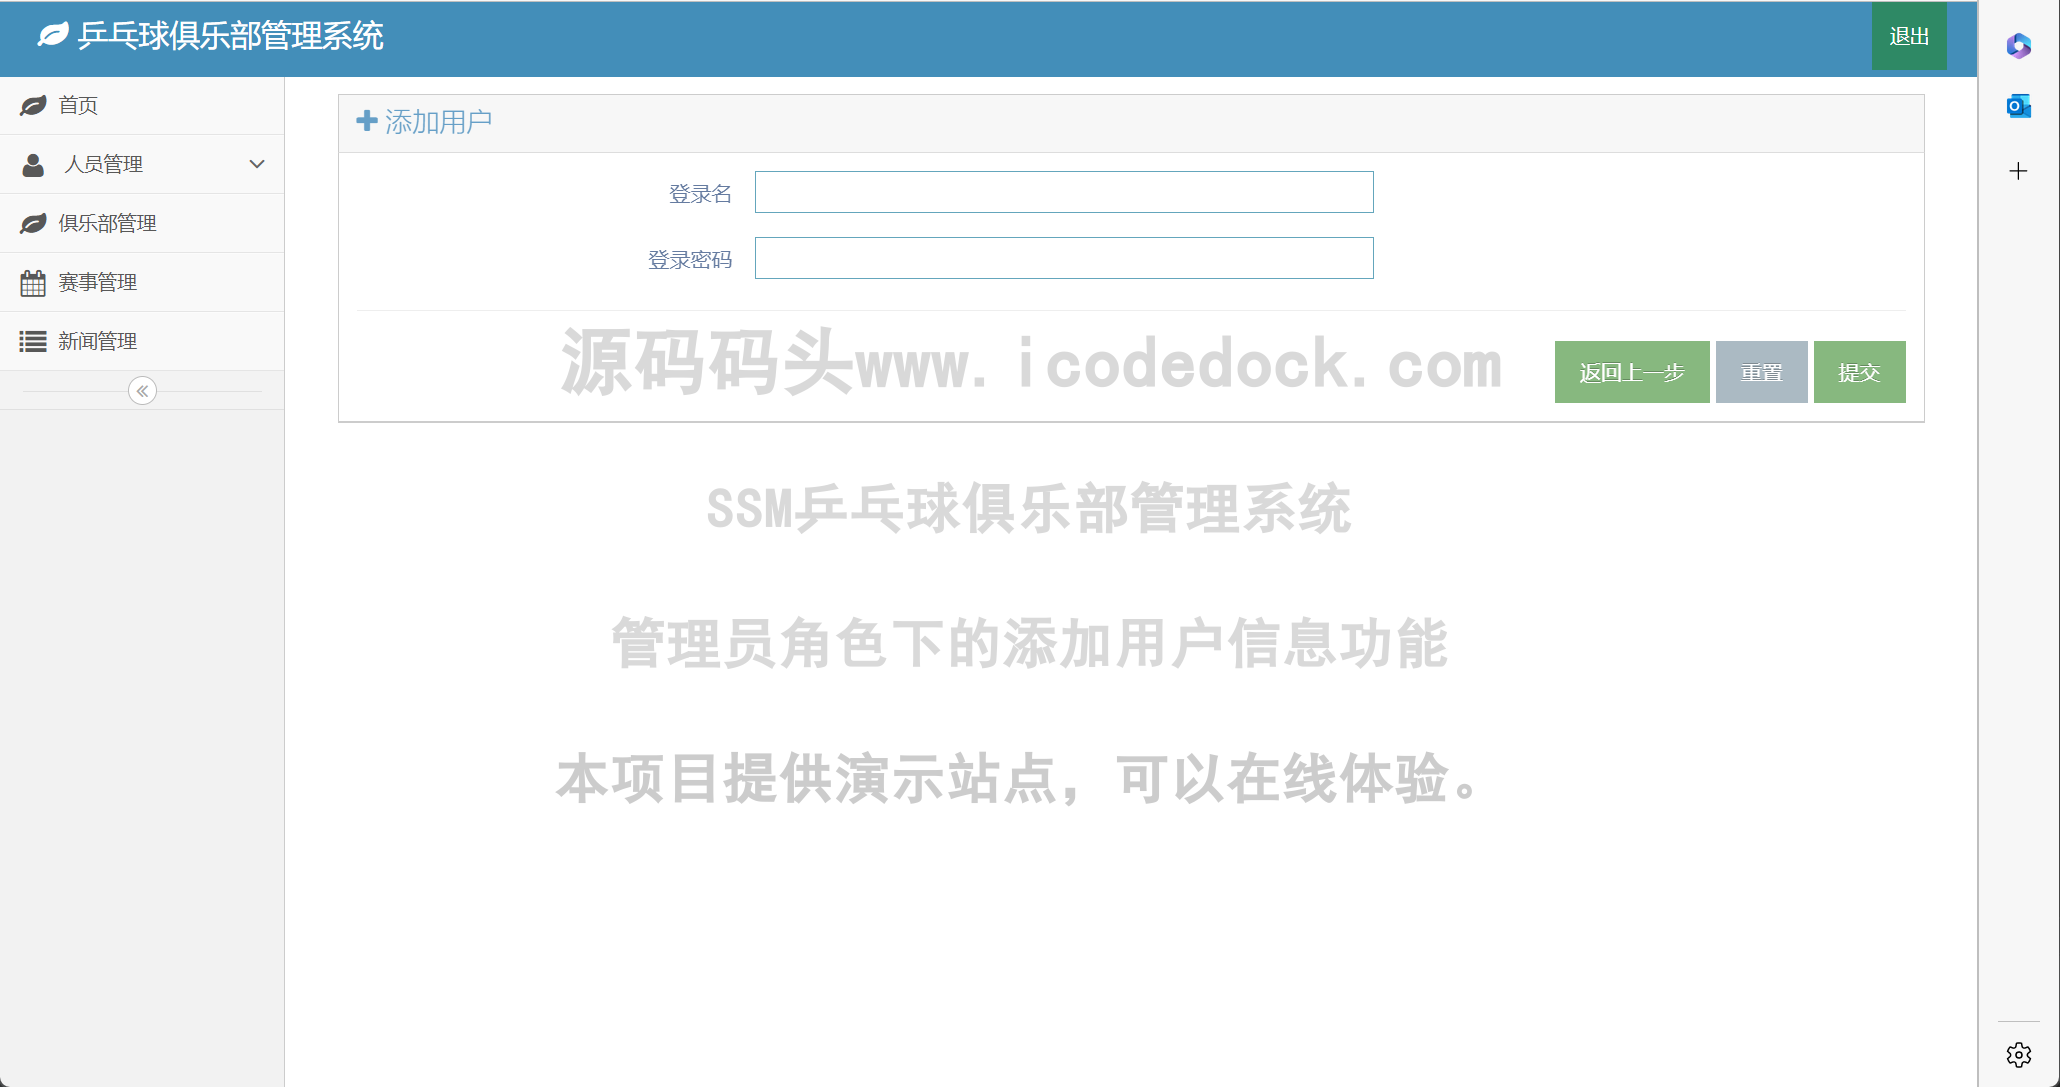 源码码头-SSM乒乓球俱乐部管理系统-管理员角色-添加用户信息